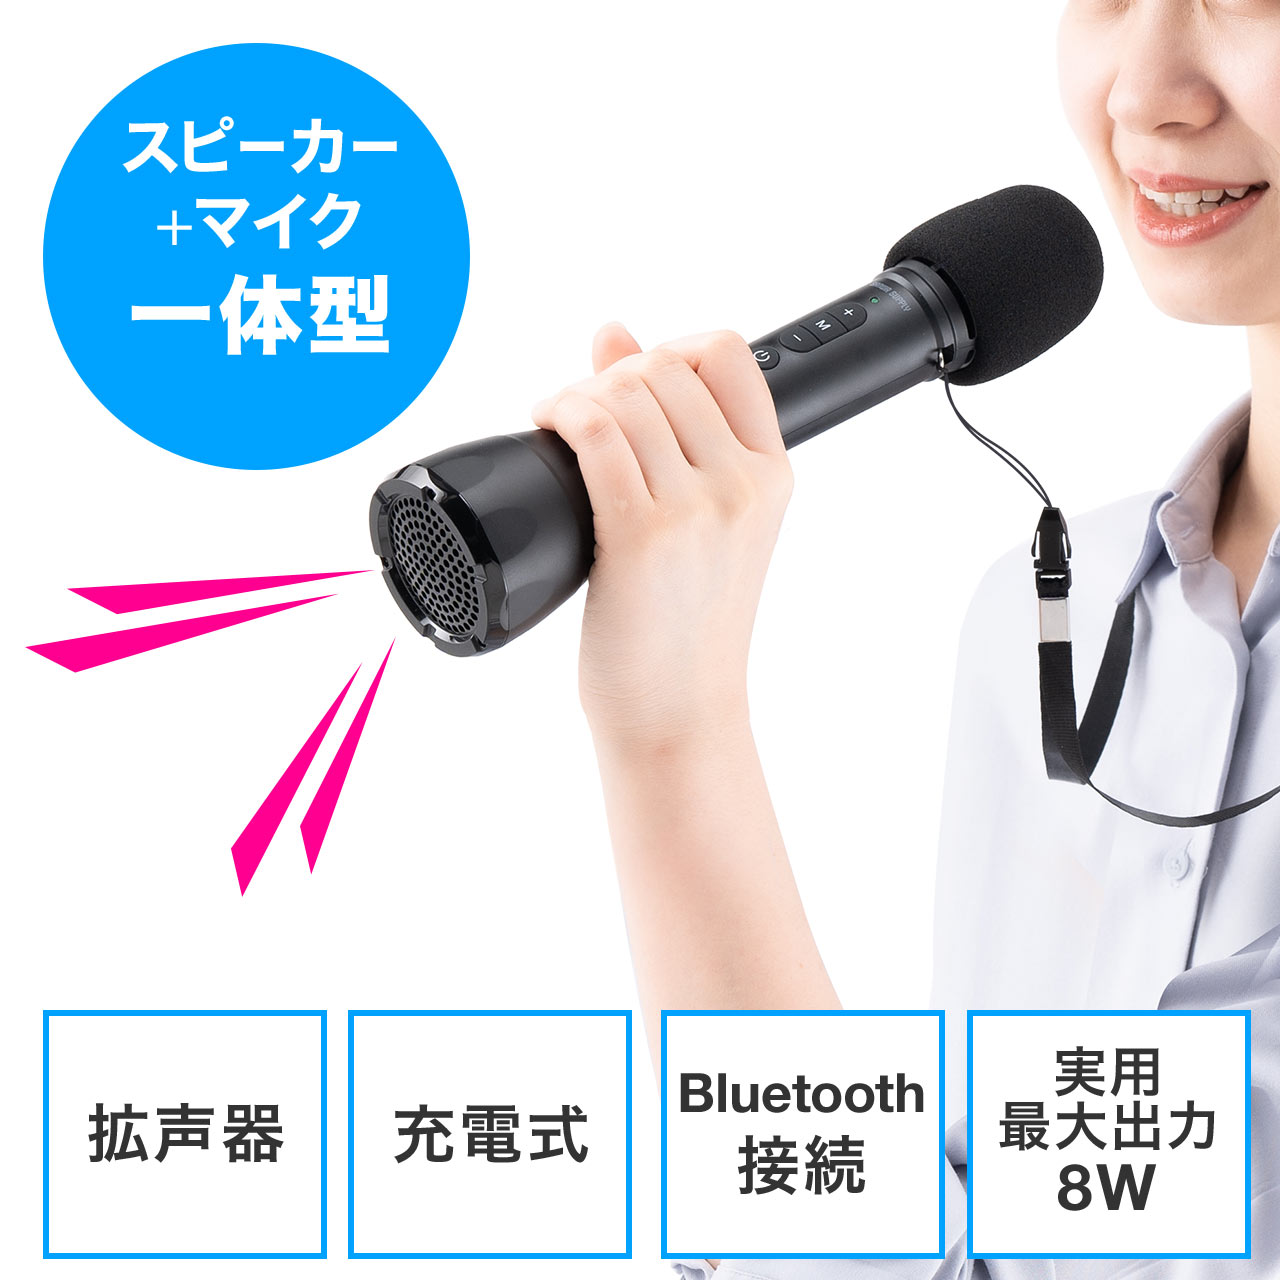 ハンドマイク型拡声器 Bluetooth対応 8W出力 スピーカー マイク 一体型 ストラップ付き｜サンプル無料貸出対応 400-SP098  |サンワダイレクト